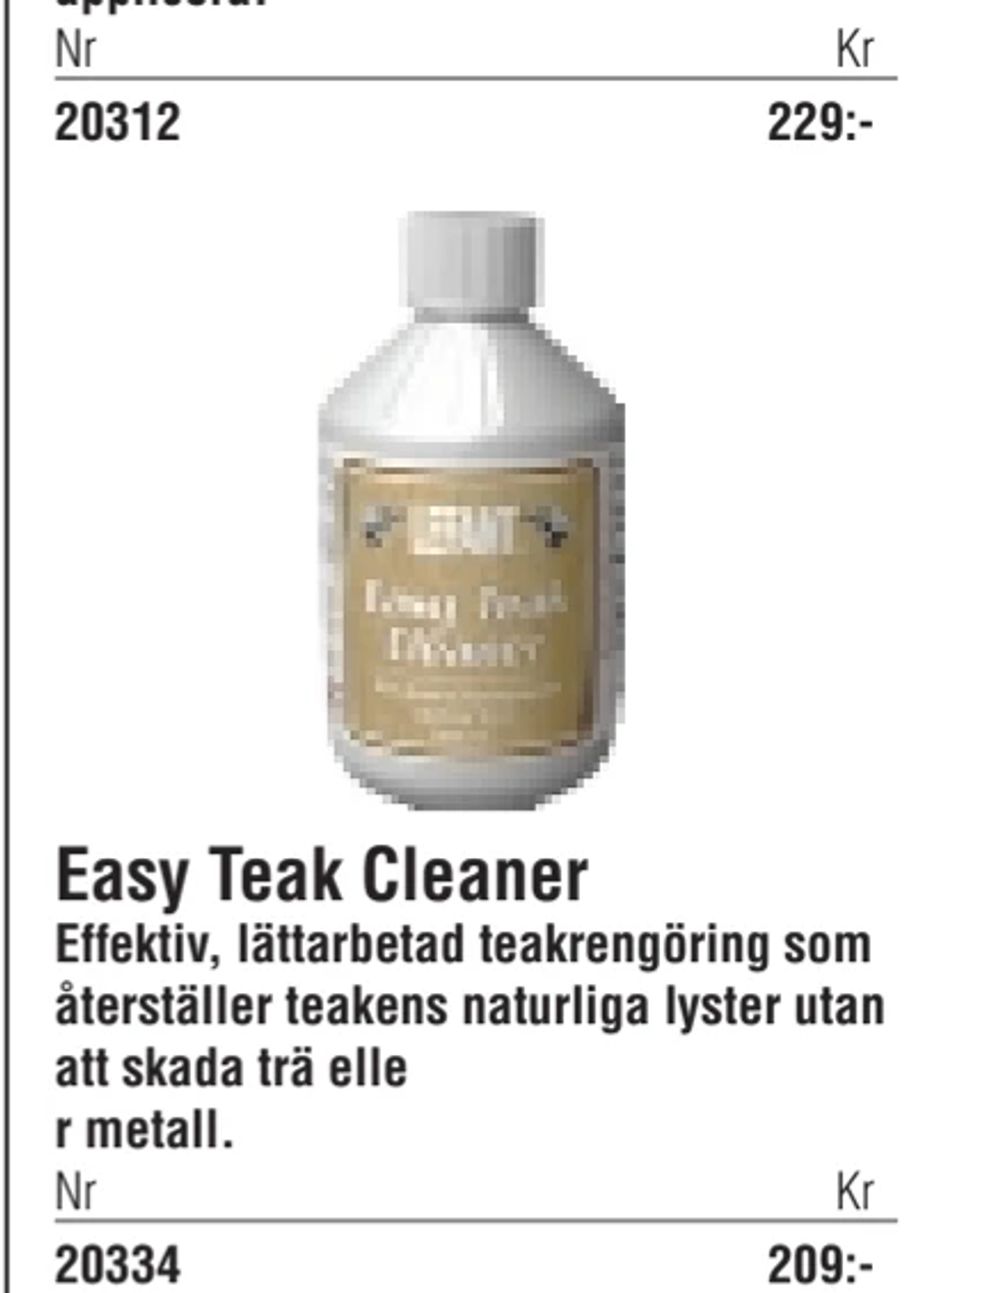 Erbjudanden på Easy Teak Cleaner från Erlandsons Brygga för 229 kr